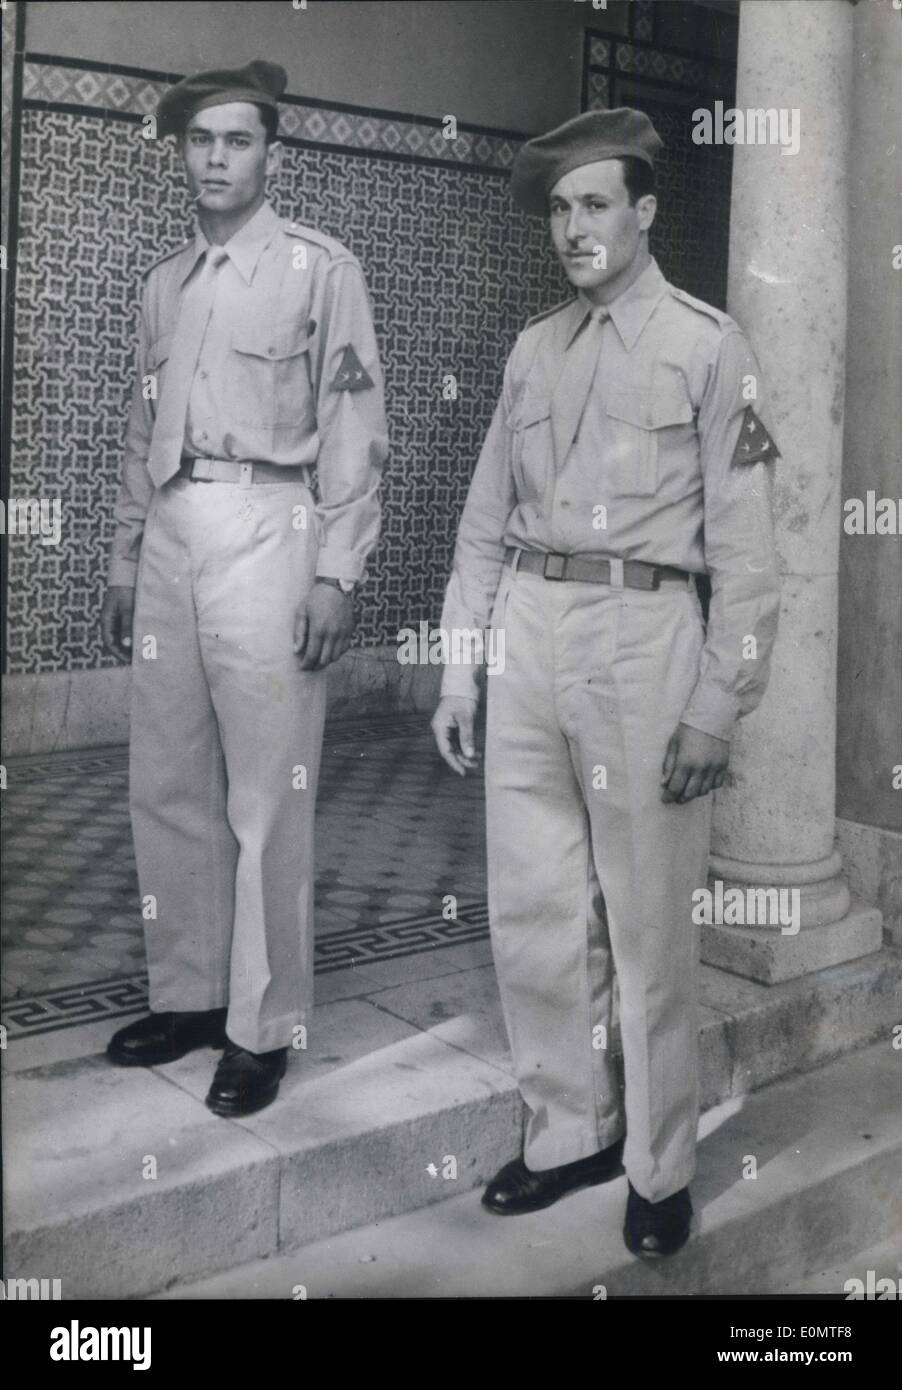 Giugno 14, 1956 - Tunissa equipaggia il suo nuovo esercito sotto l'indipendenza dello Stato: il nuovo esercito tunisino (3.000 uomini) è ora in dotazione dal governo francese. La foto mostra un soldato uniforme del nuovo esercito tunisino. Foto Stock